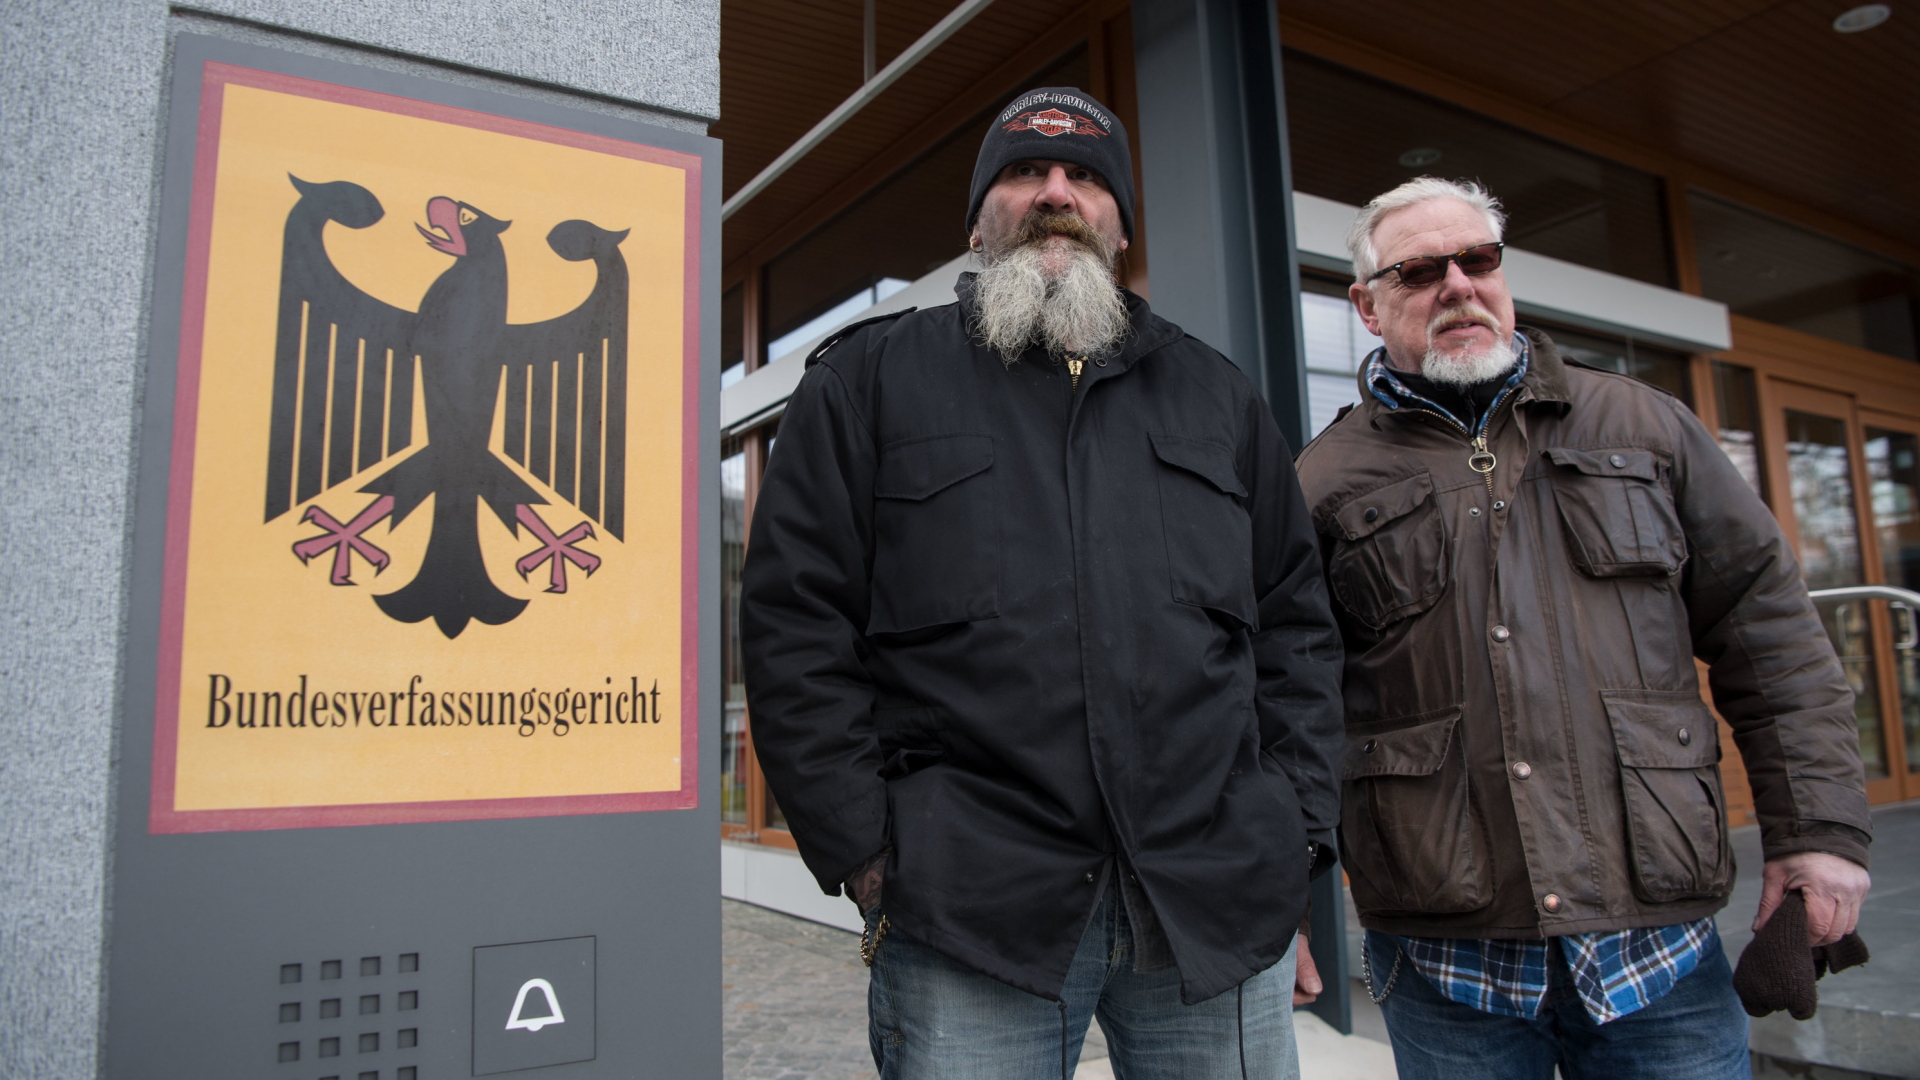 "Hupe" (li.) und Lutz Schelhorn reichten beim Bundesverfassungsgerichts Klage gegen das Kennzeichenverbot für Rockervereine ein. (2018) | dpa